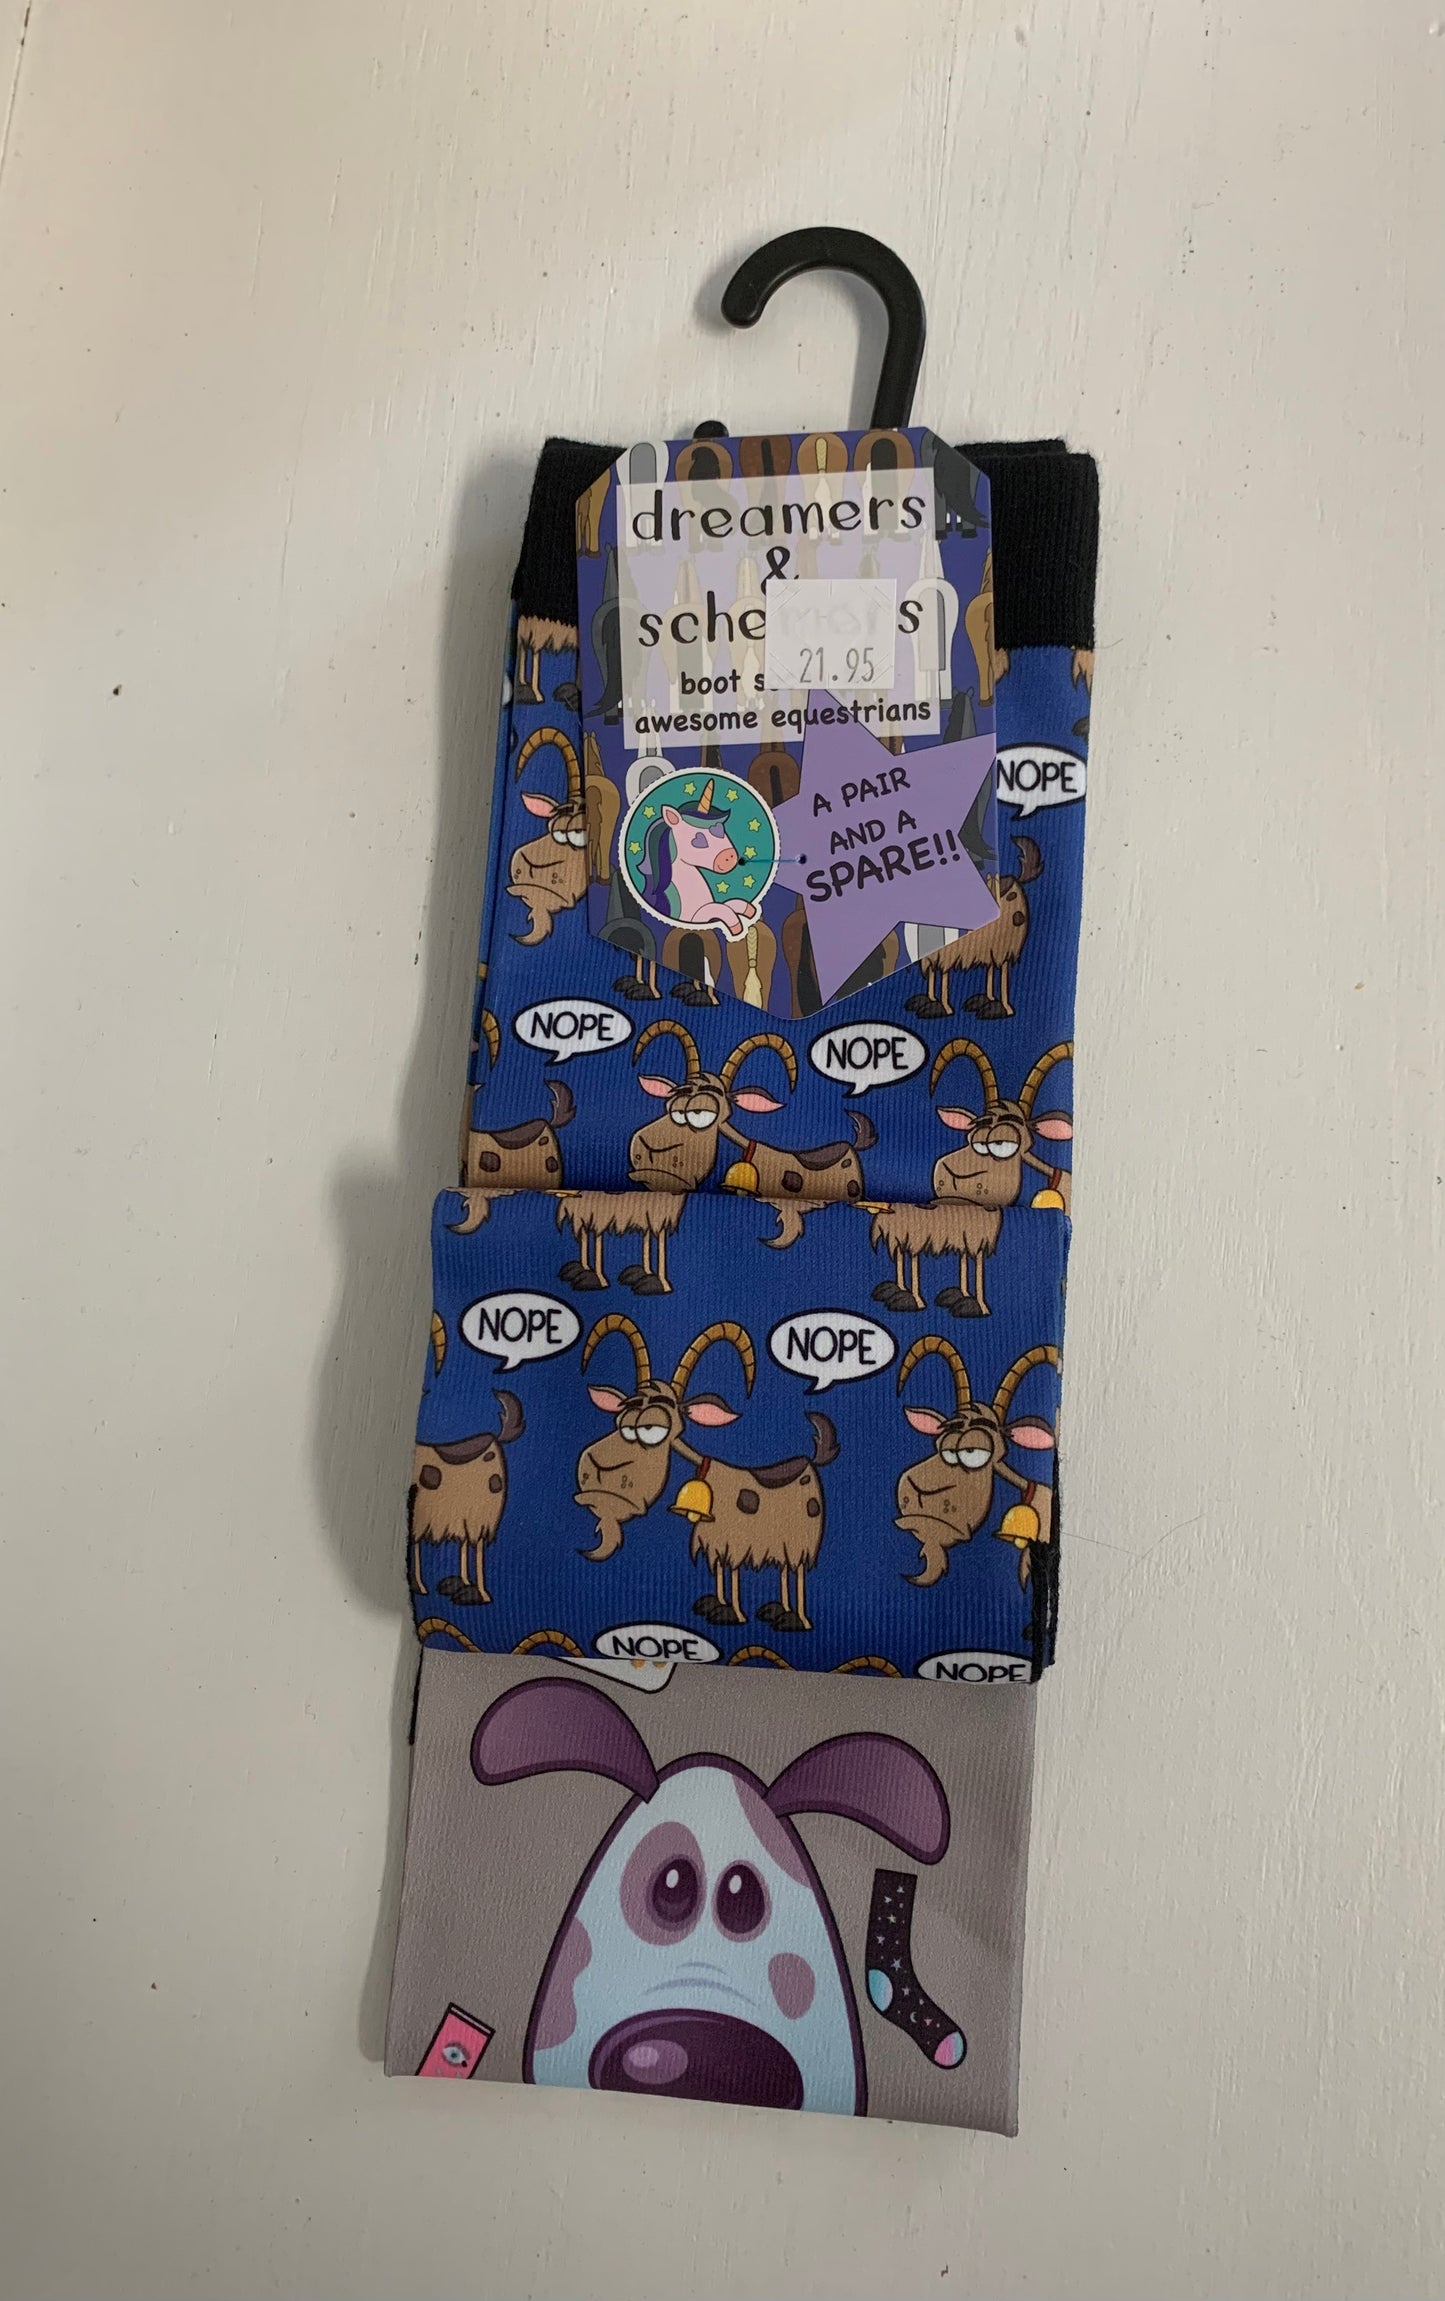 Dreamers & Schemers socks